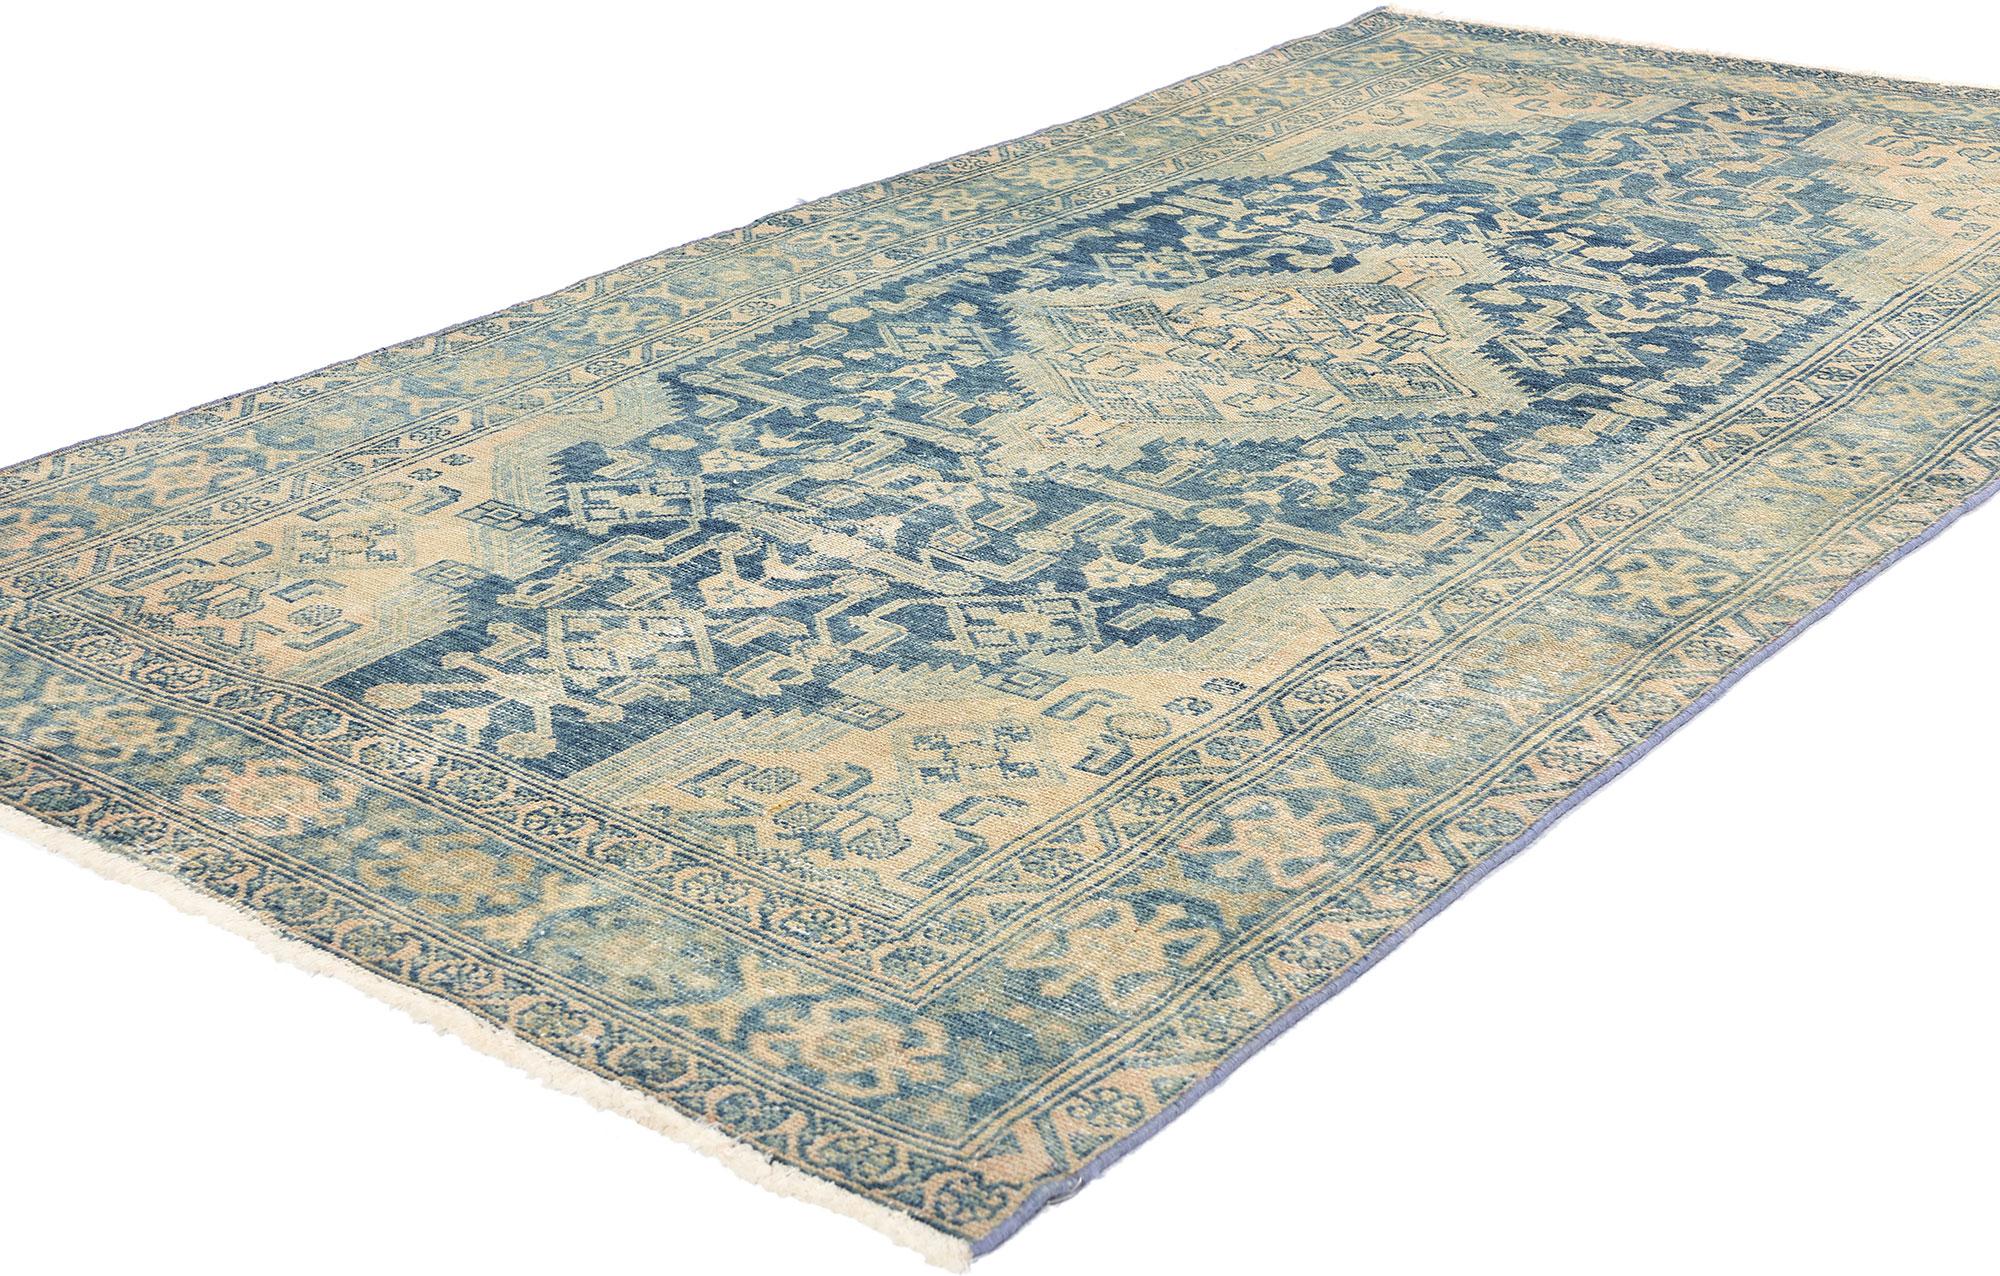 61263 Antiker Persischer Malayer Teppich, 03'11 x 07'03. Antike gewaschene persische Malayer-Teppiche sind alte Teppiche aus der Region Malayer im Westen Irans, die durch einen Waschvorgang ein verwittertes oder verblasstes Aussehen erhalten haben,